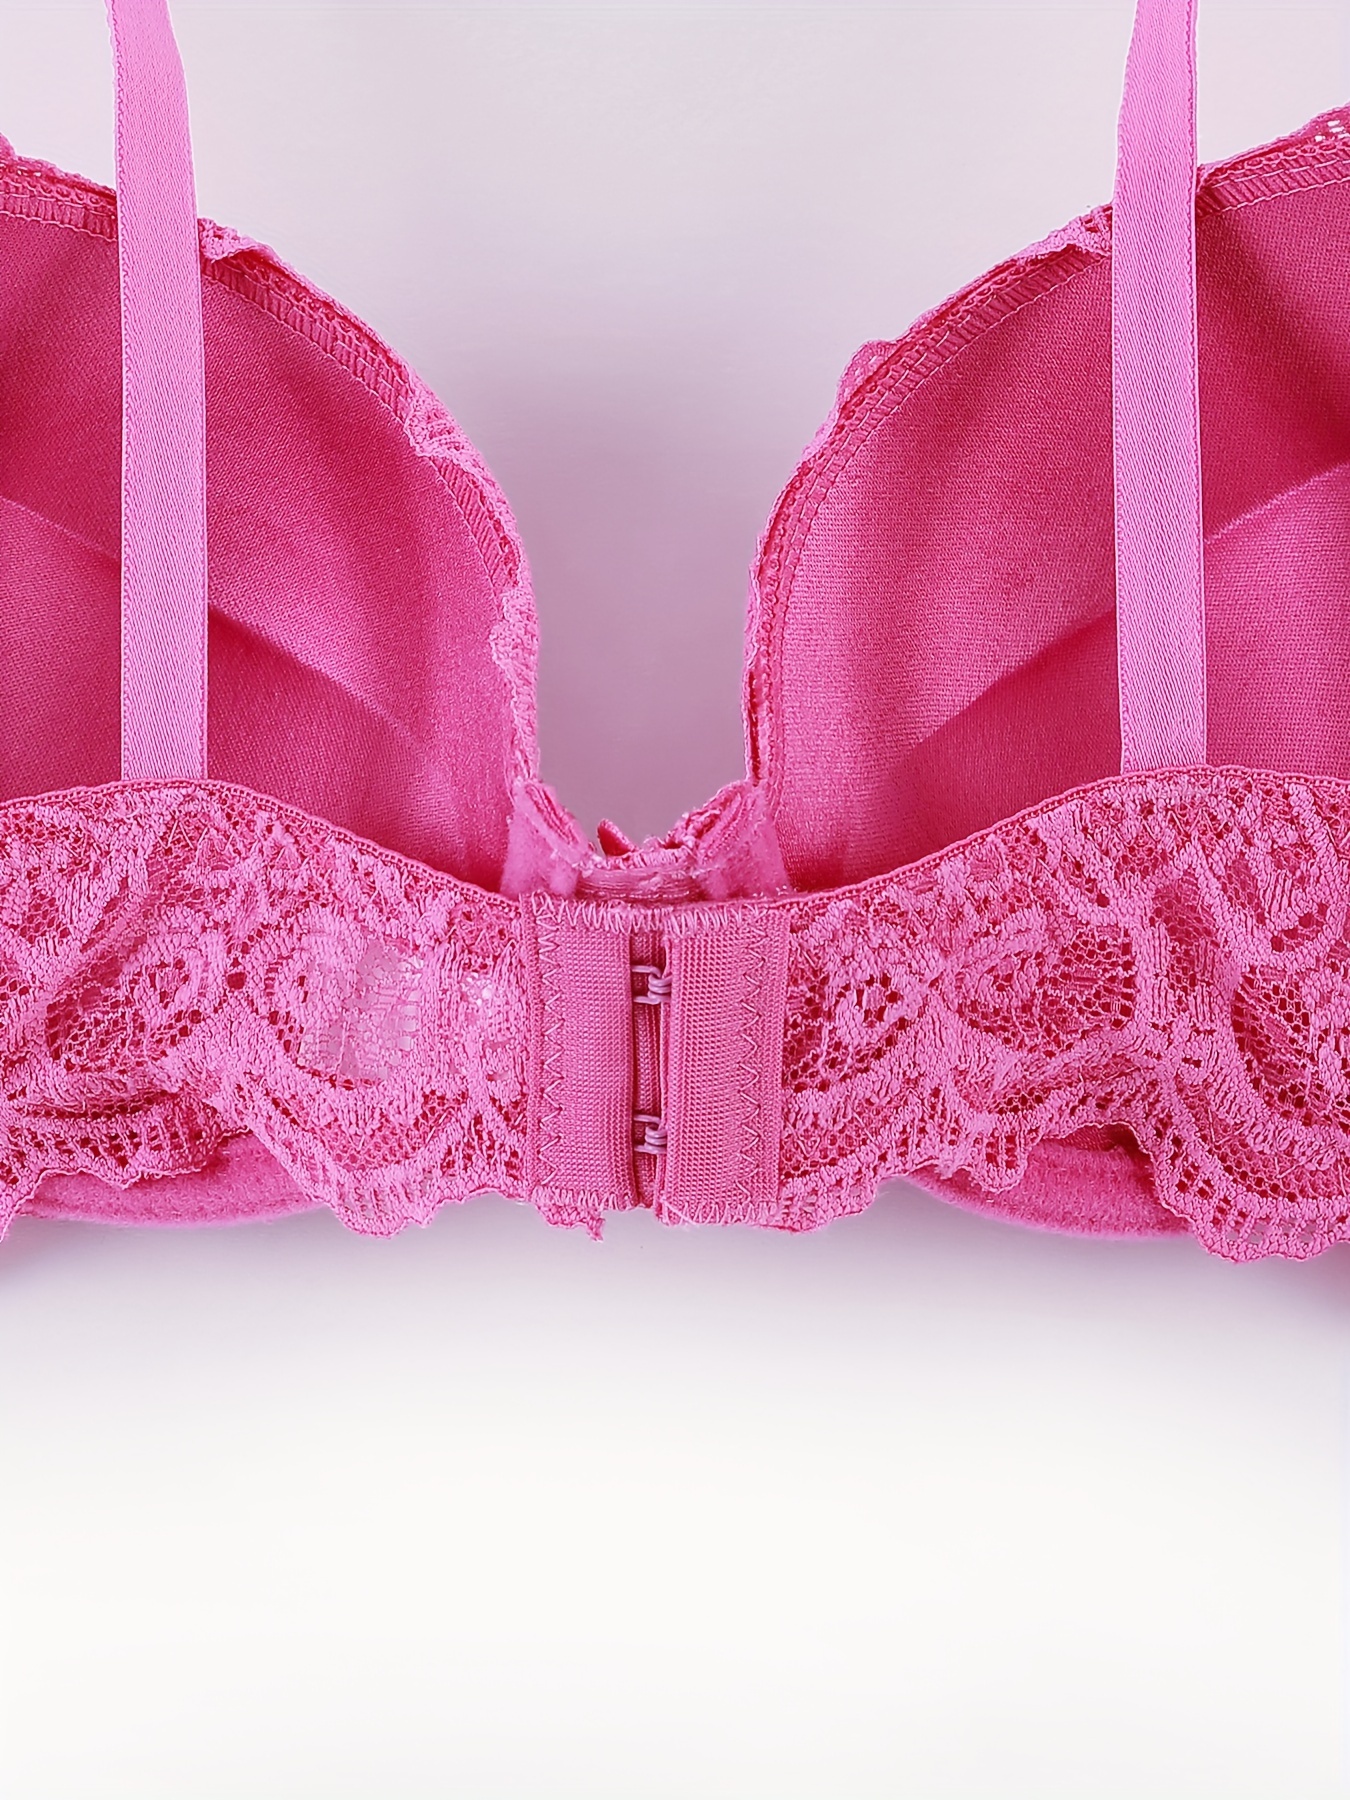 2pcs Contrast Lace Push Up Bras, Comfy & Breathable Intimates Bra, Women's  Lingerie & Underwear